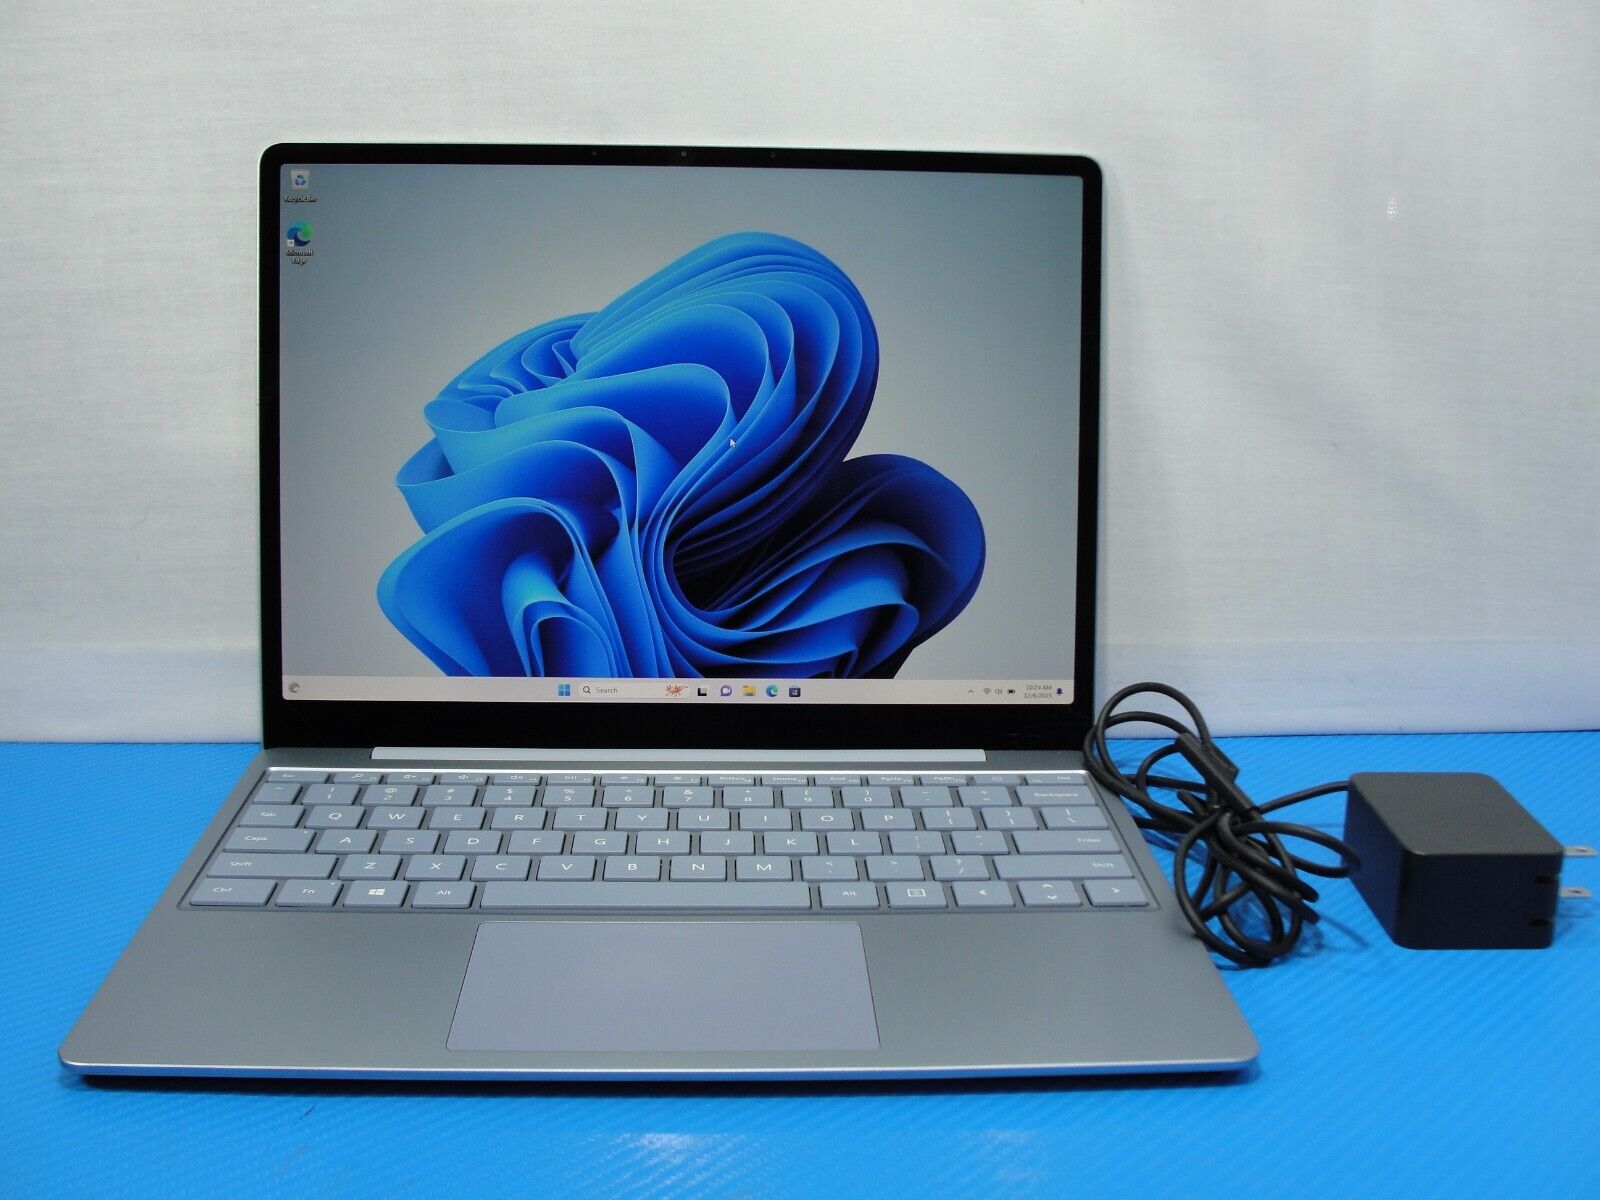 Microsoft Surface Go M1943 Intel i5-1035G1 1 Ghz 8GB RAM 128GB SSD